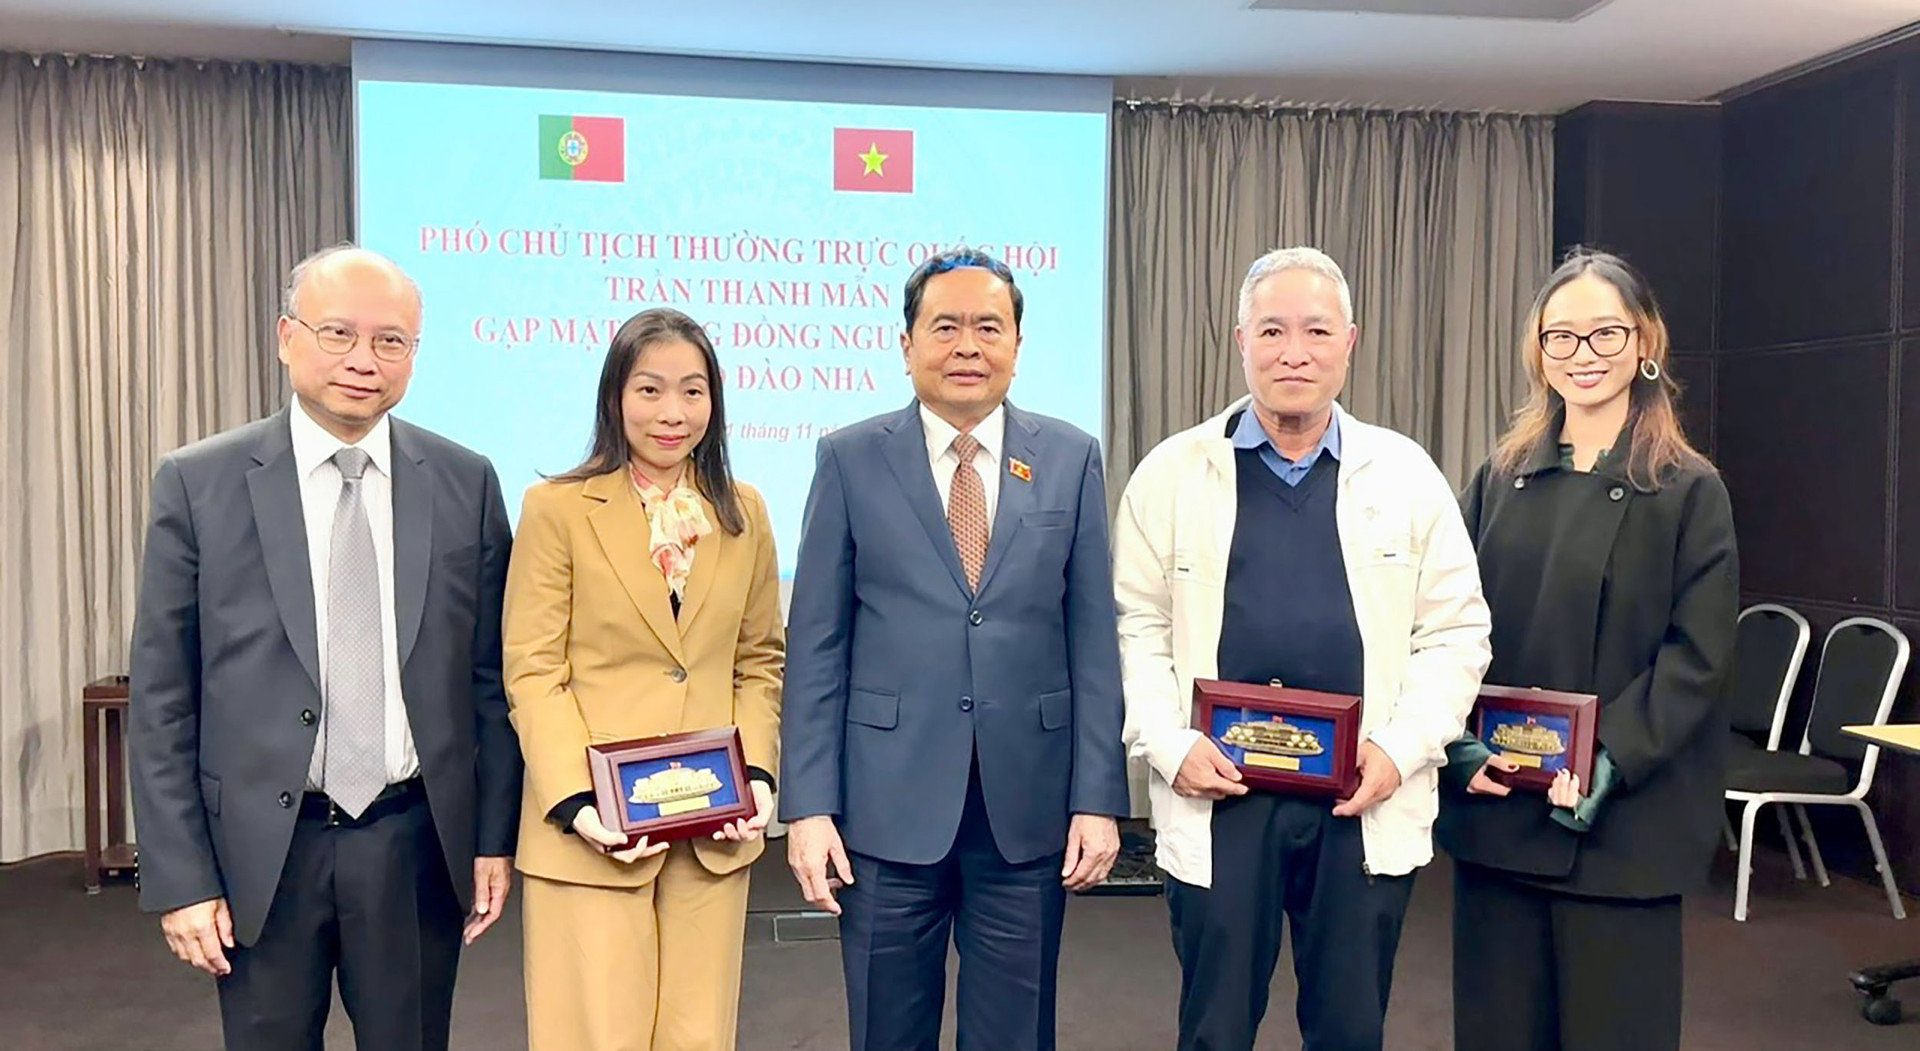 Phó Chủ tịch Thường trực Quốc hội Trần Thanh Mẫn gặp gỡ cộng đồng người Việt Nam tại Bồ Đào Nha